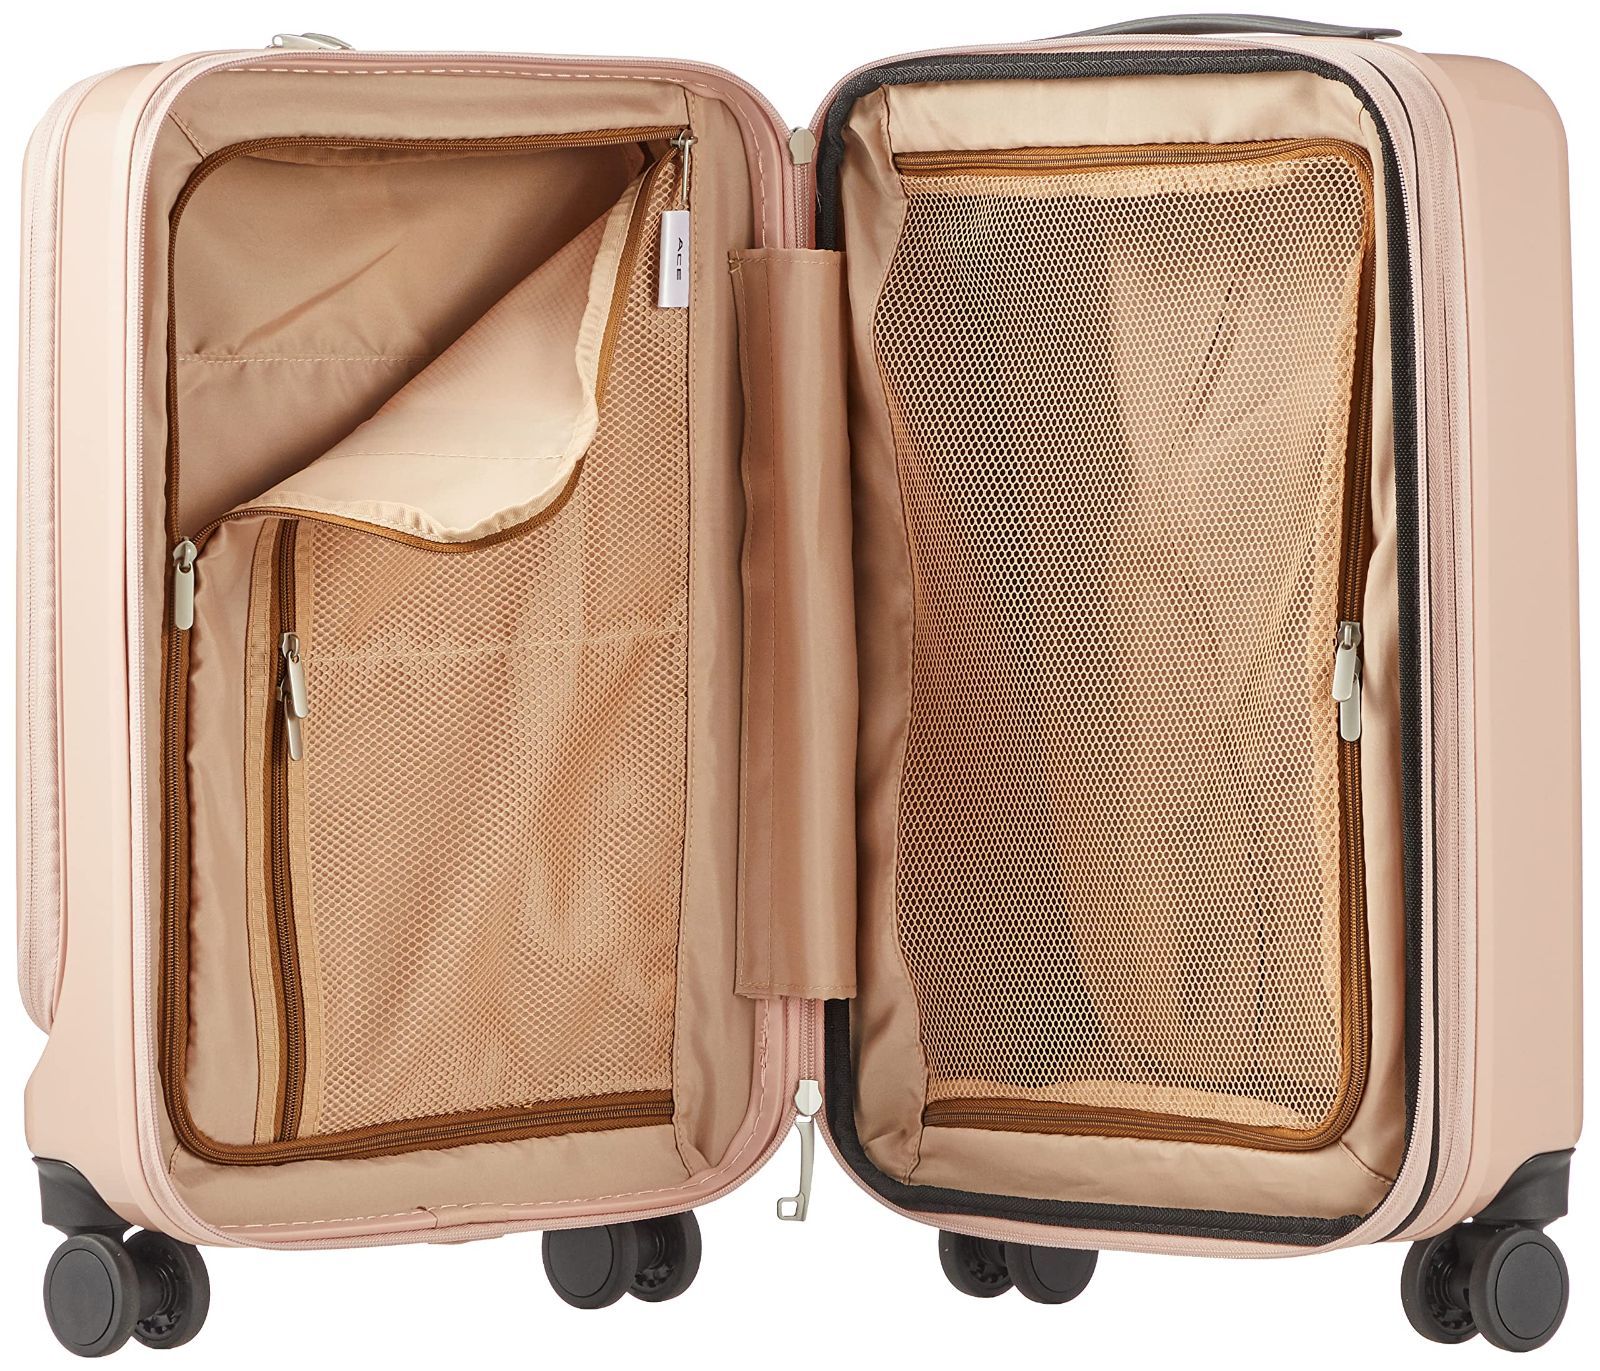 エース スーツケース キャリーケース キャリーバッグ 機内持ち込み sサイズ 1泊2日 2泊3日 31L 41L(拡張時) フロントポケット